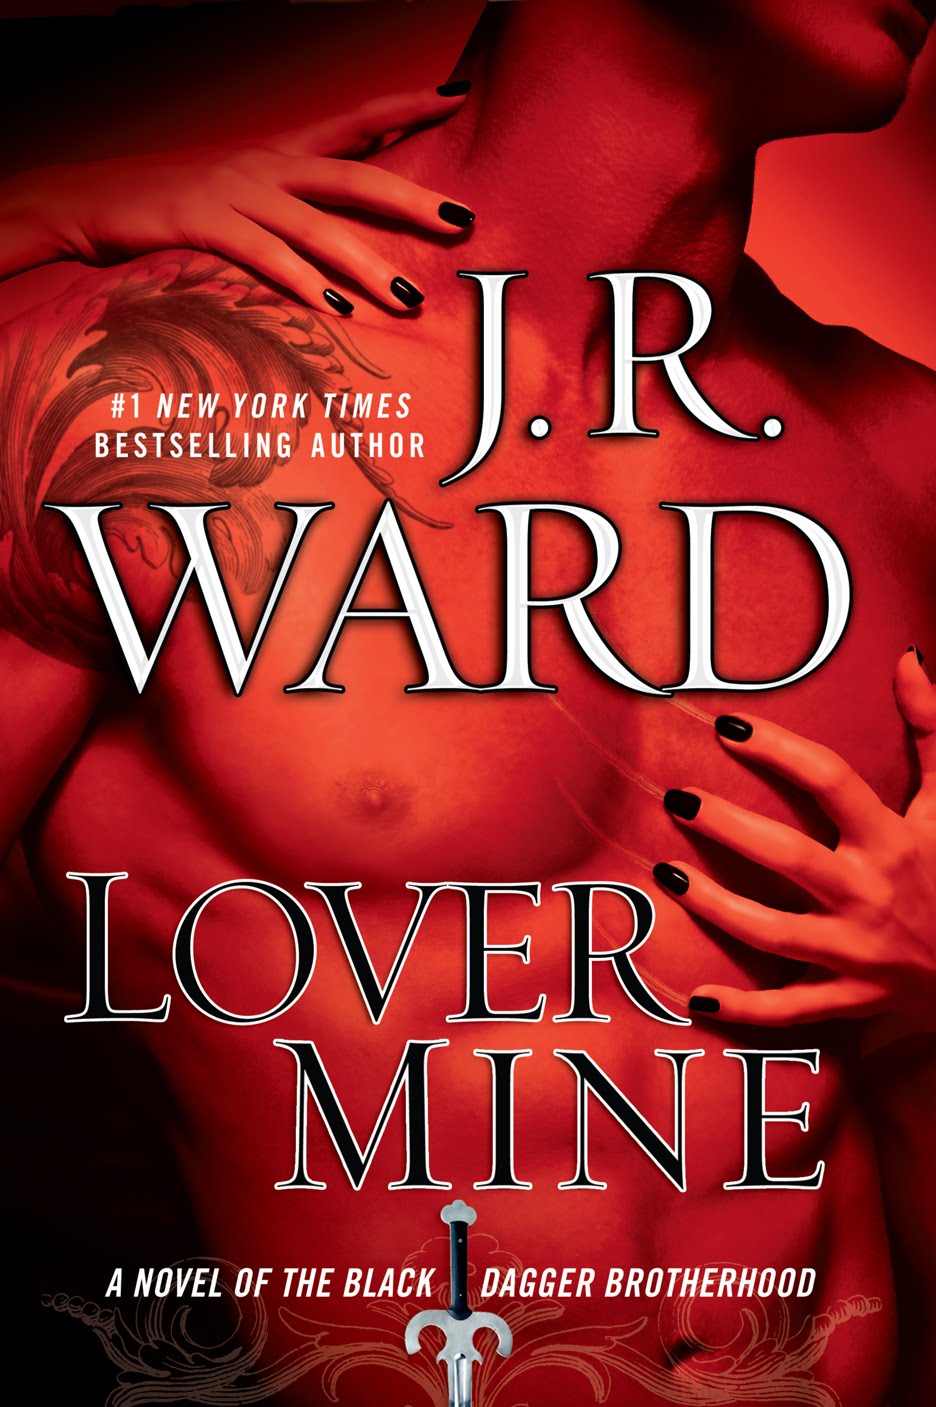 Книга осма - Единствена любов (Lover Mine)  - Page 4 BDB8-Lover+Mine